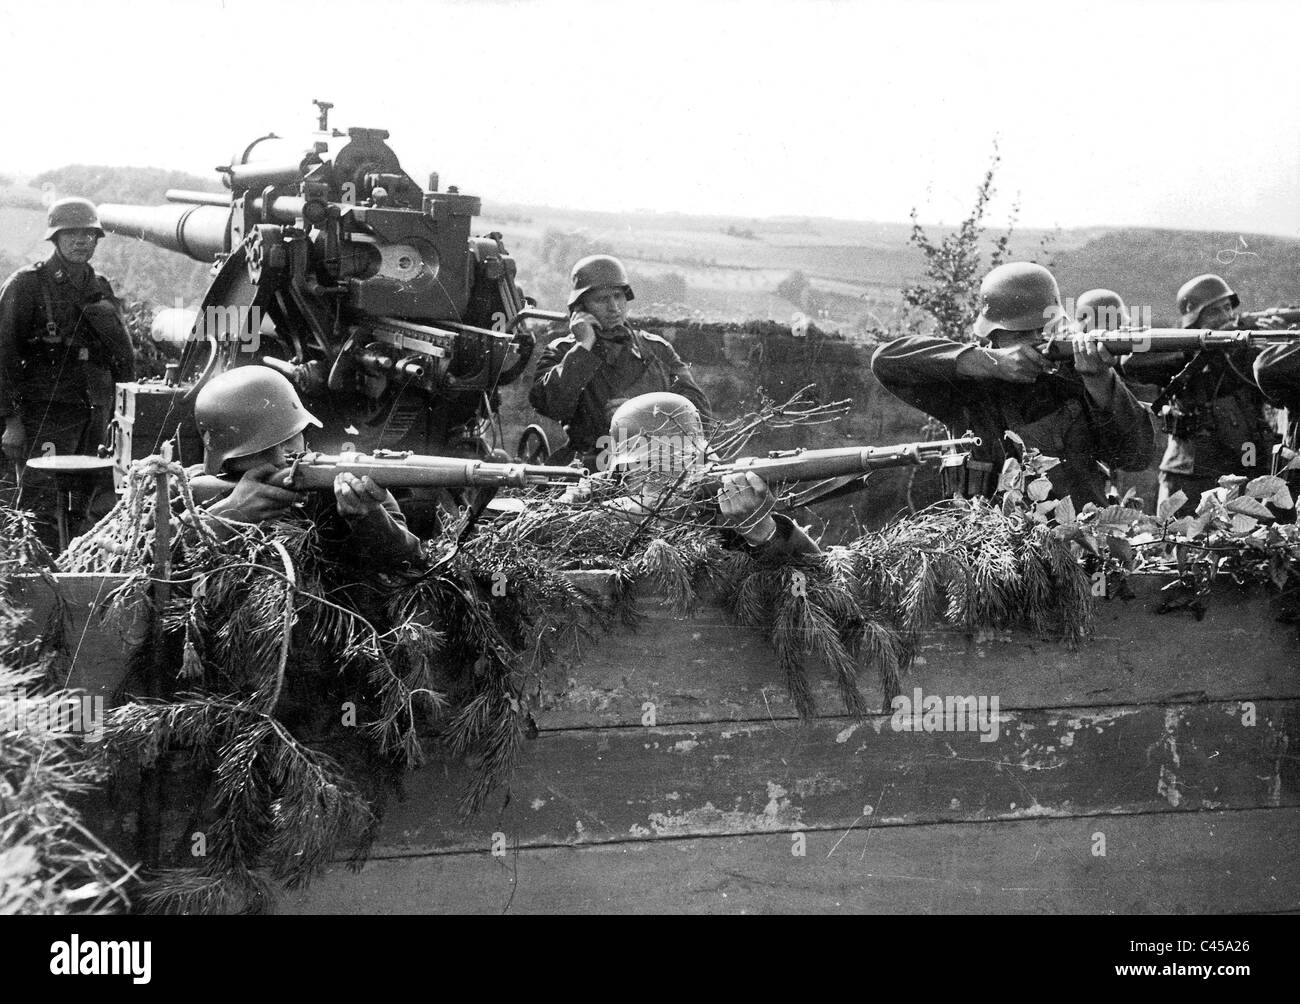 Soldats d'un canon antiaérien allemand contre la défense de l'exercice Banque D'Images